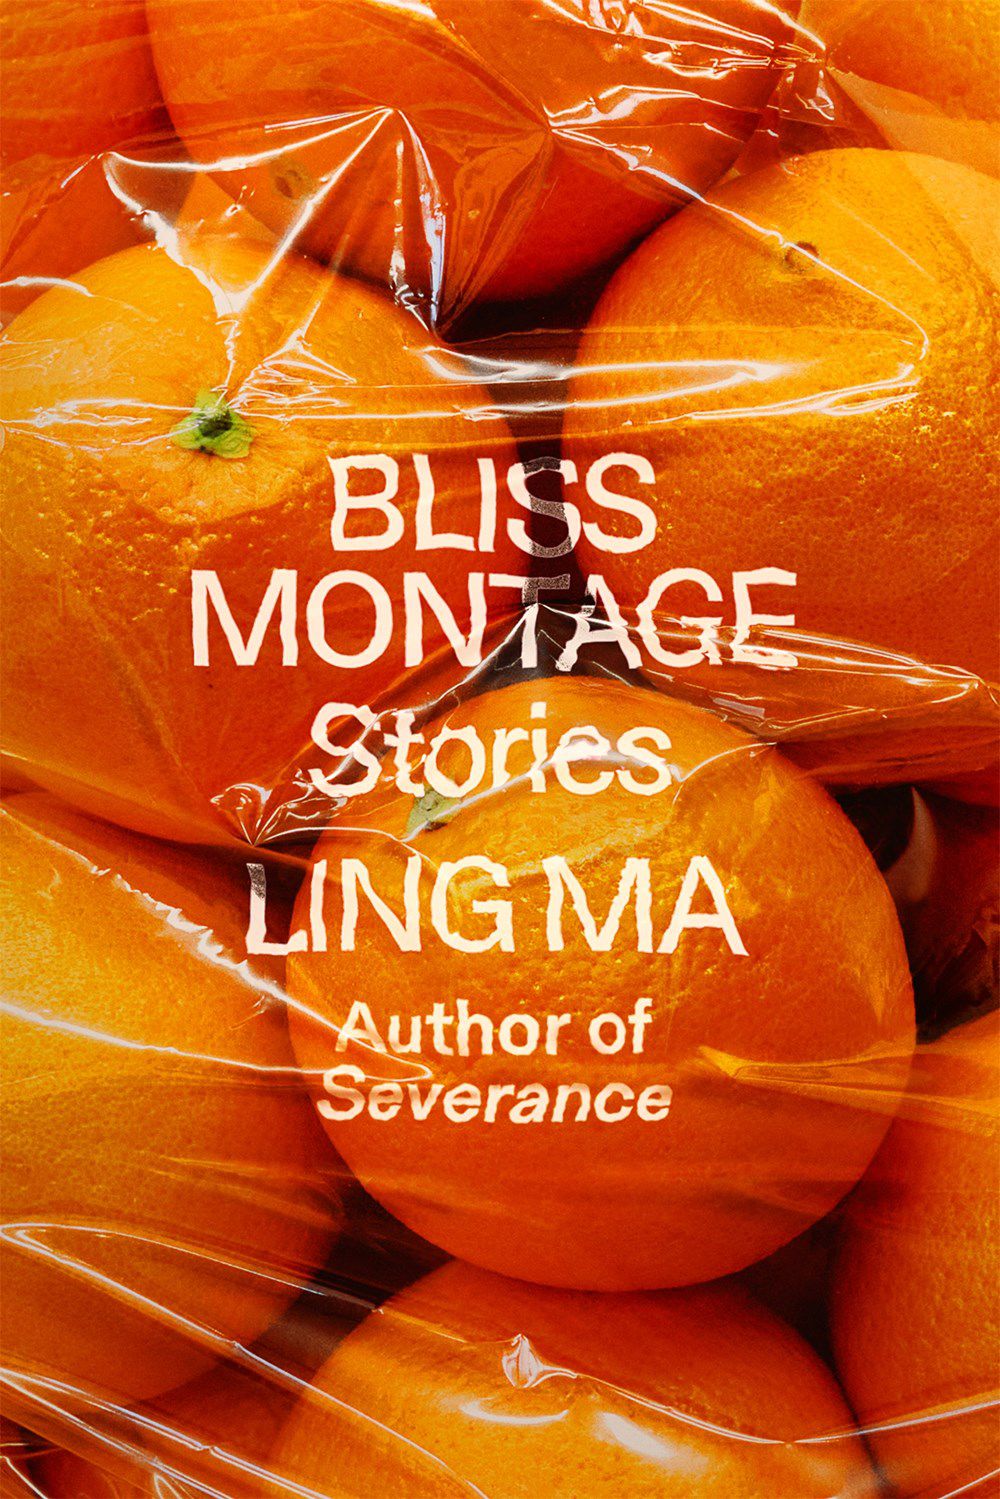 Immagine di copertina per Bliss Montage di Ling Ma, con arance in un involucro di plastica